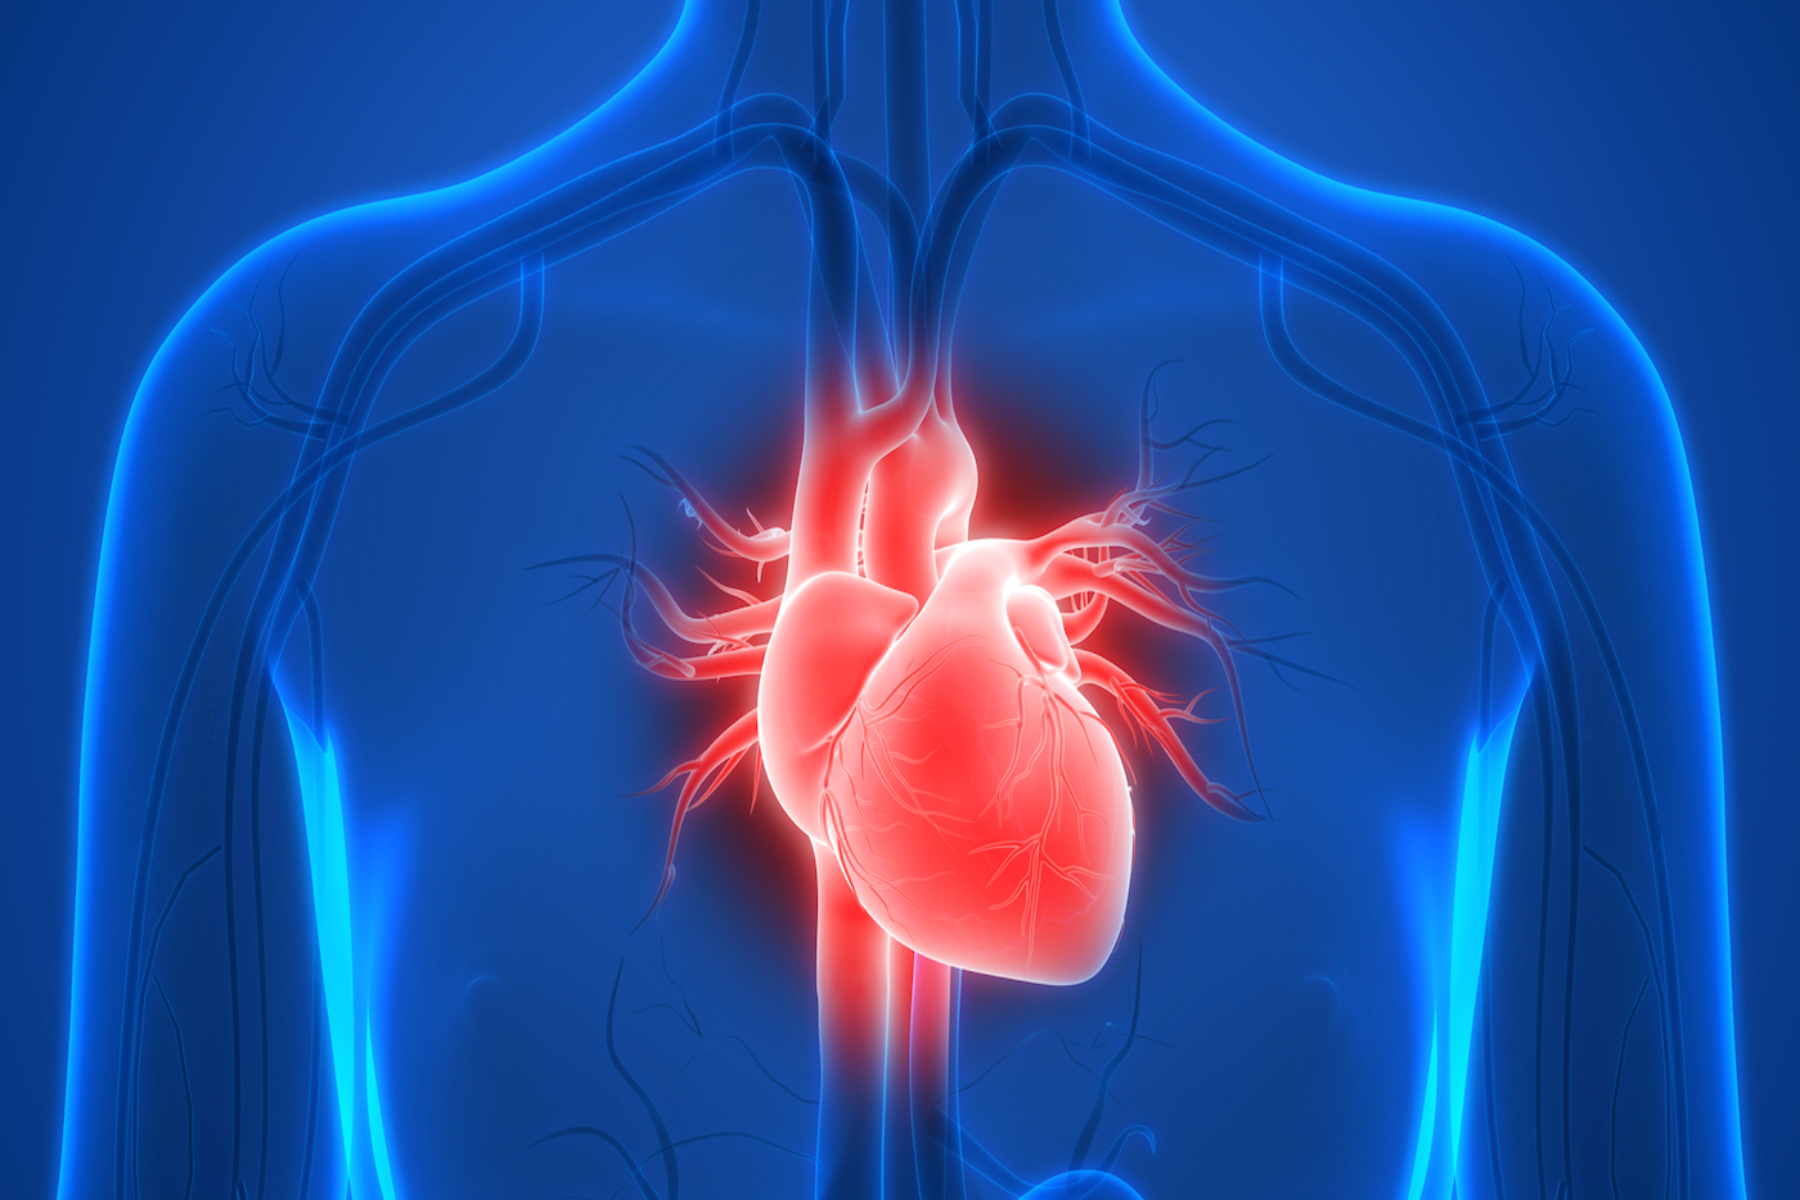 Έρευνα: Οι επιστήμονες επινοούν τρόπους για την διατήρηση της καρδιάς των δωρητών